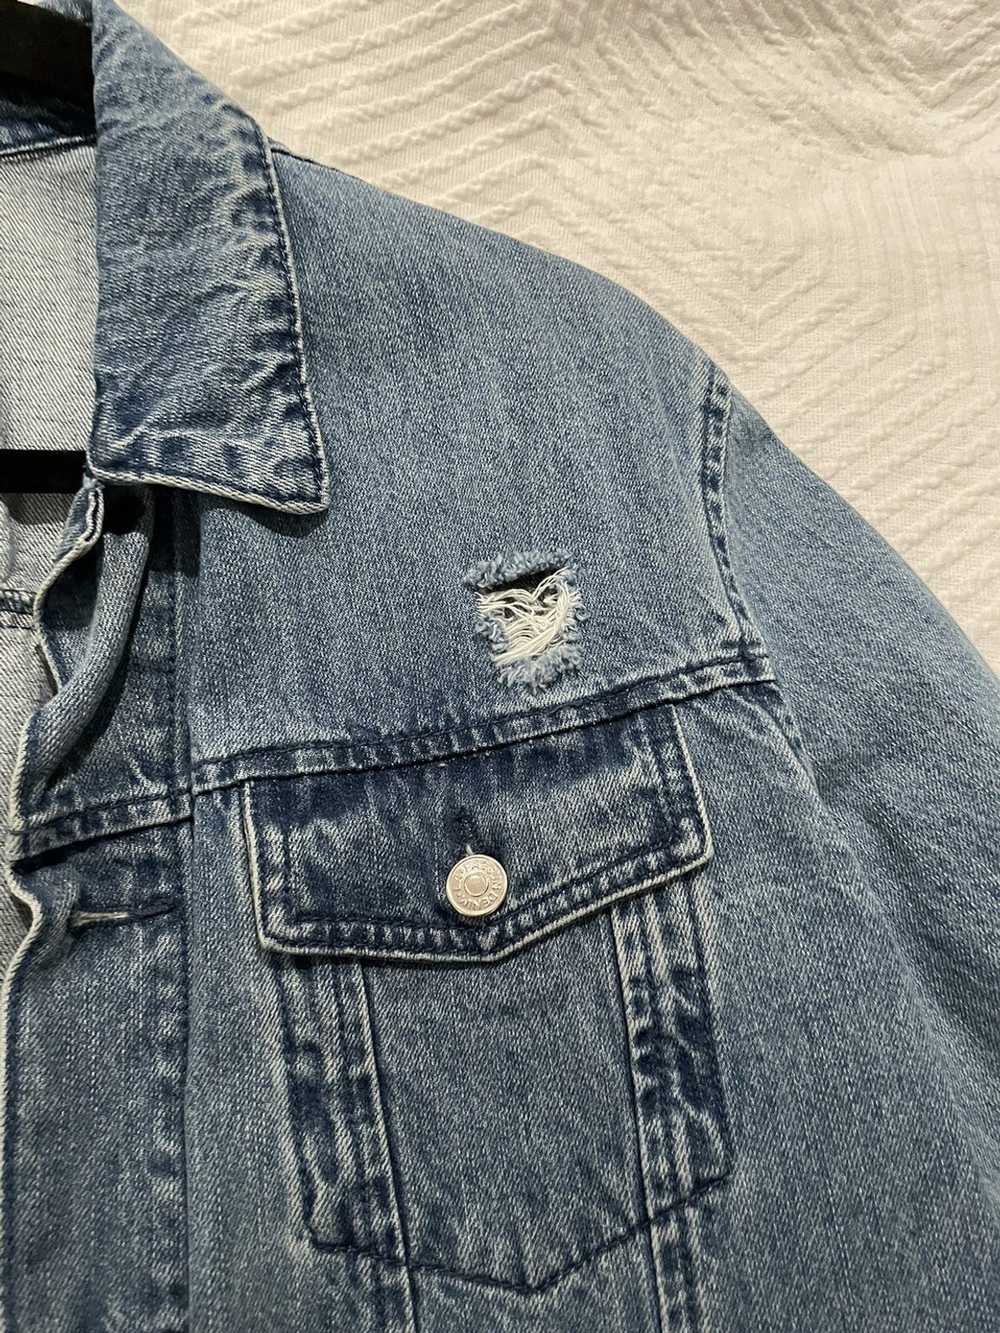 Pacsun Pacsun jean jacket - image 2